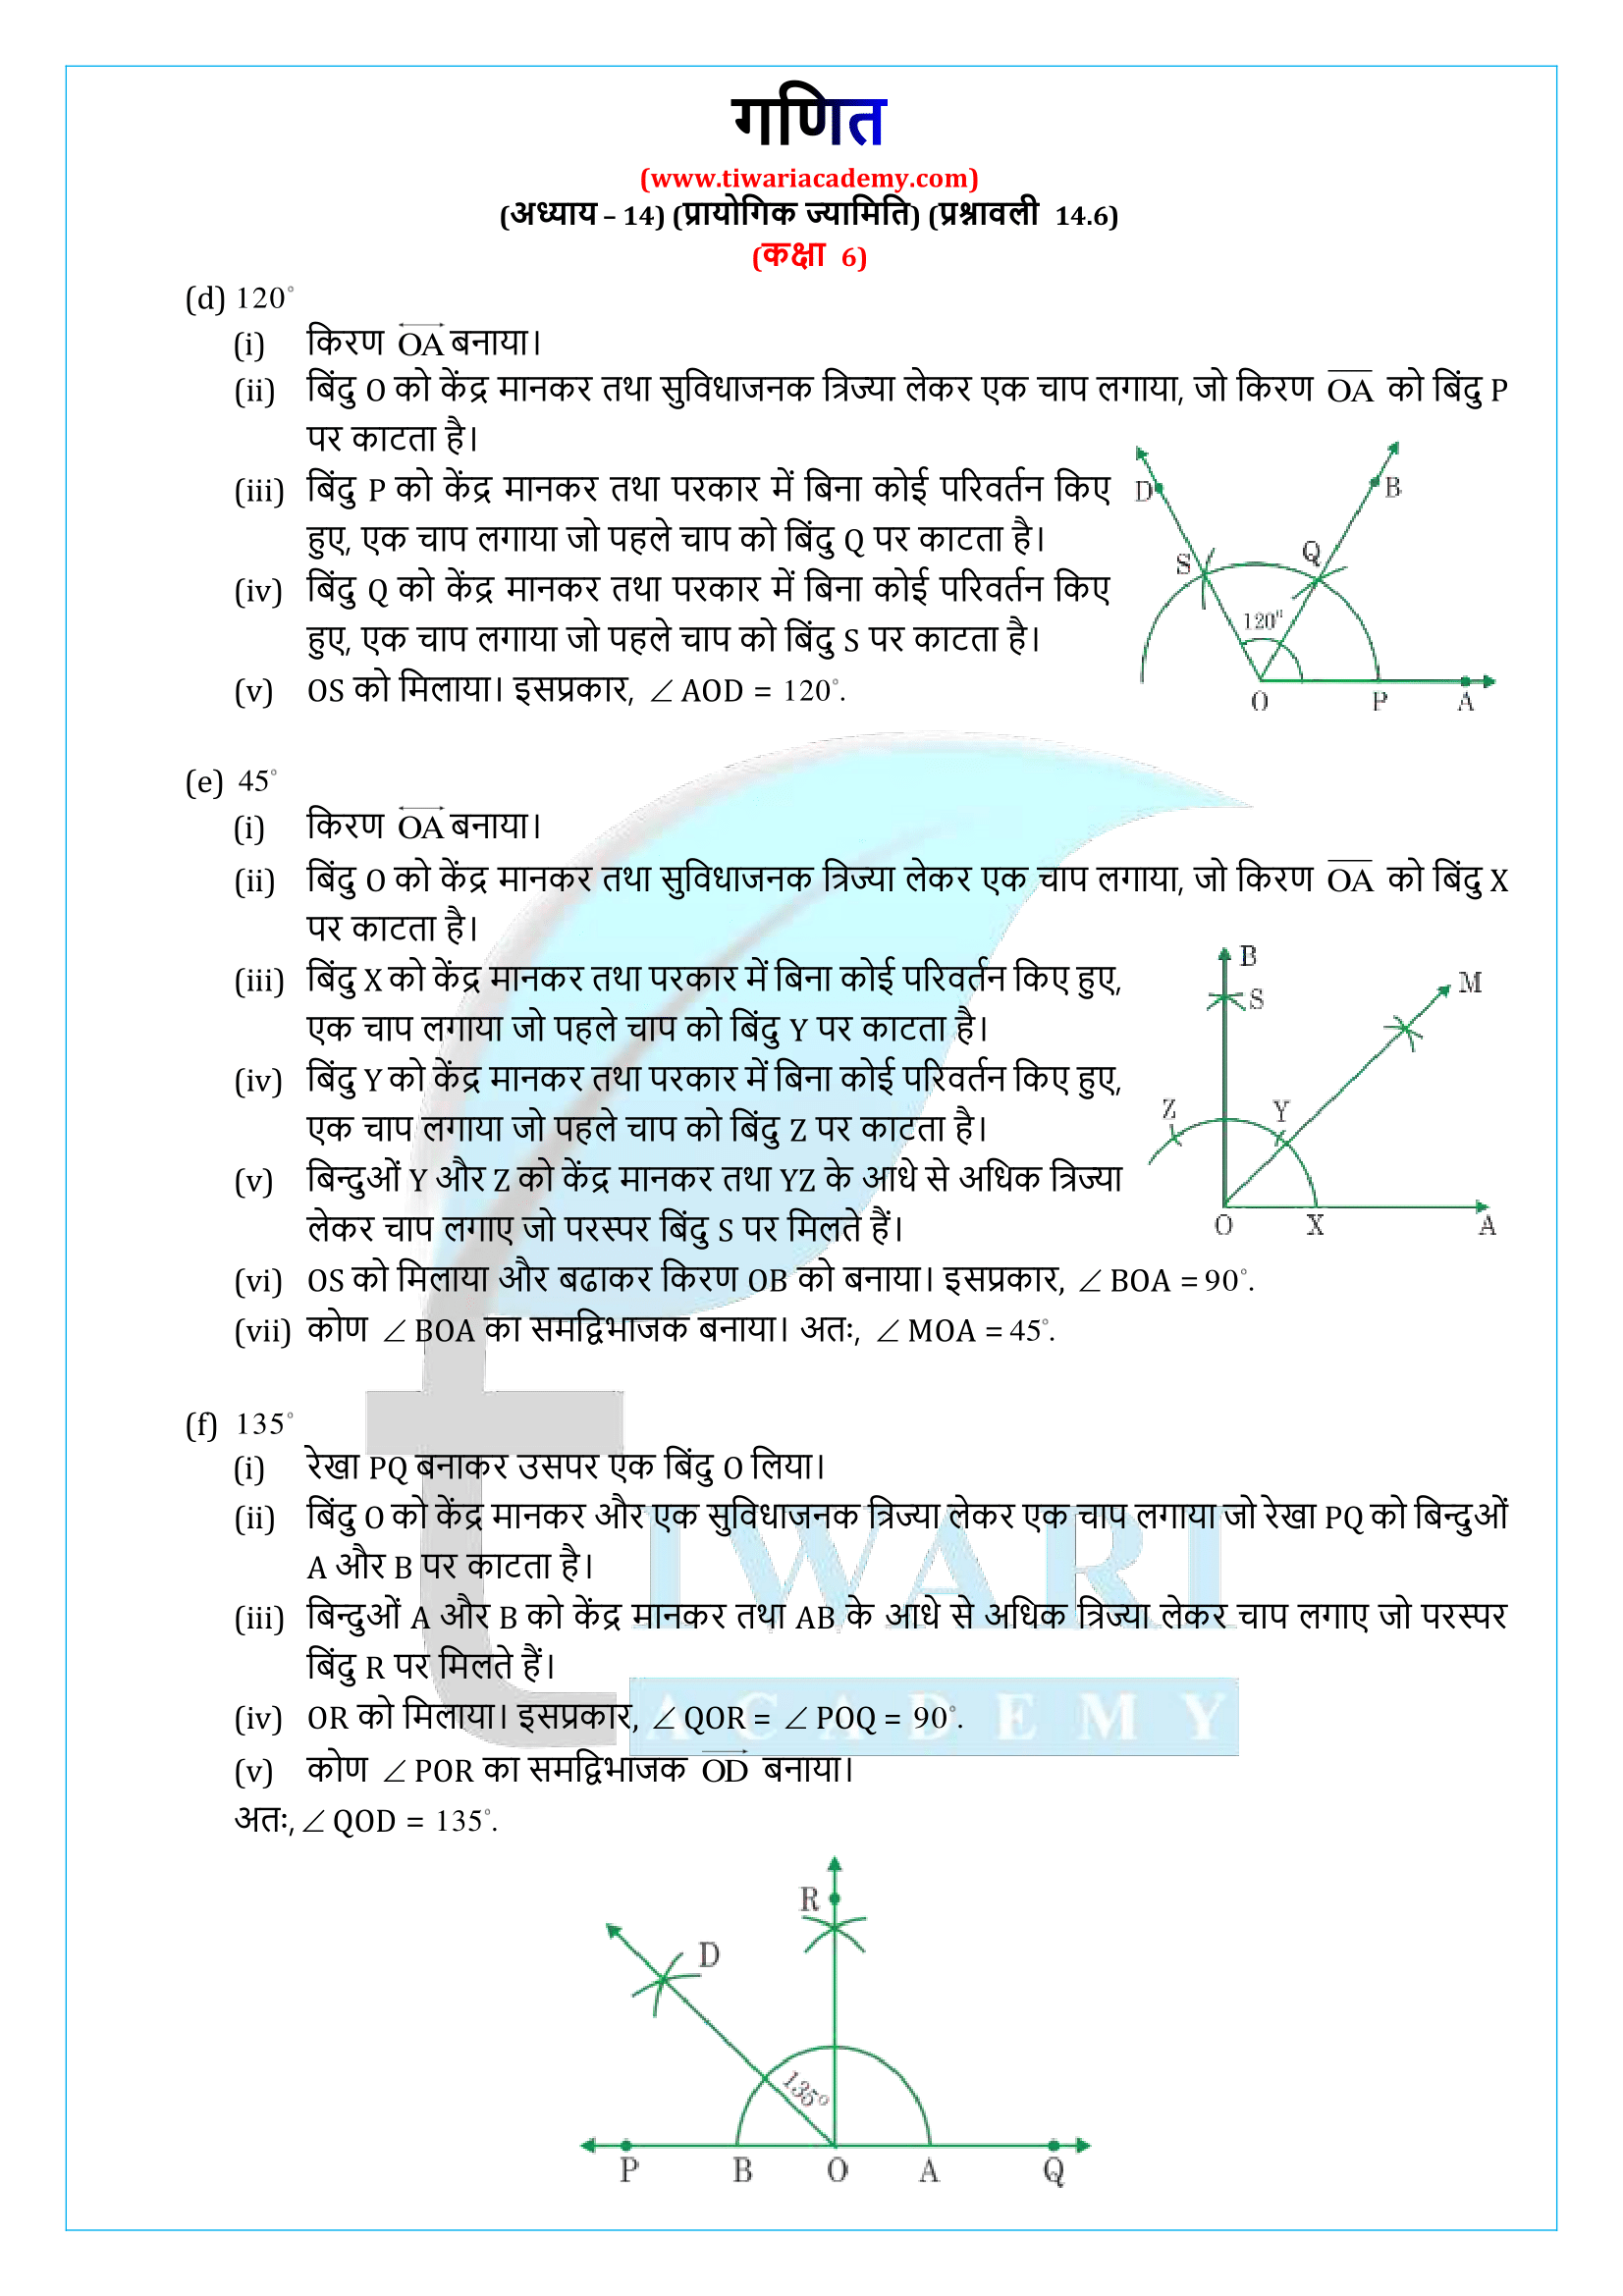 कक्षा 6 गणित प्रश्नावली 14.6 के सवाल जवाब